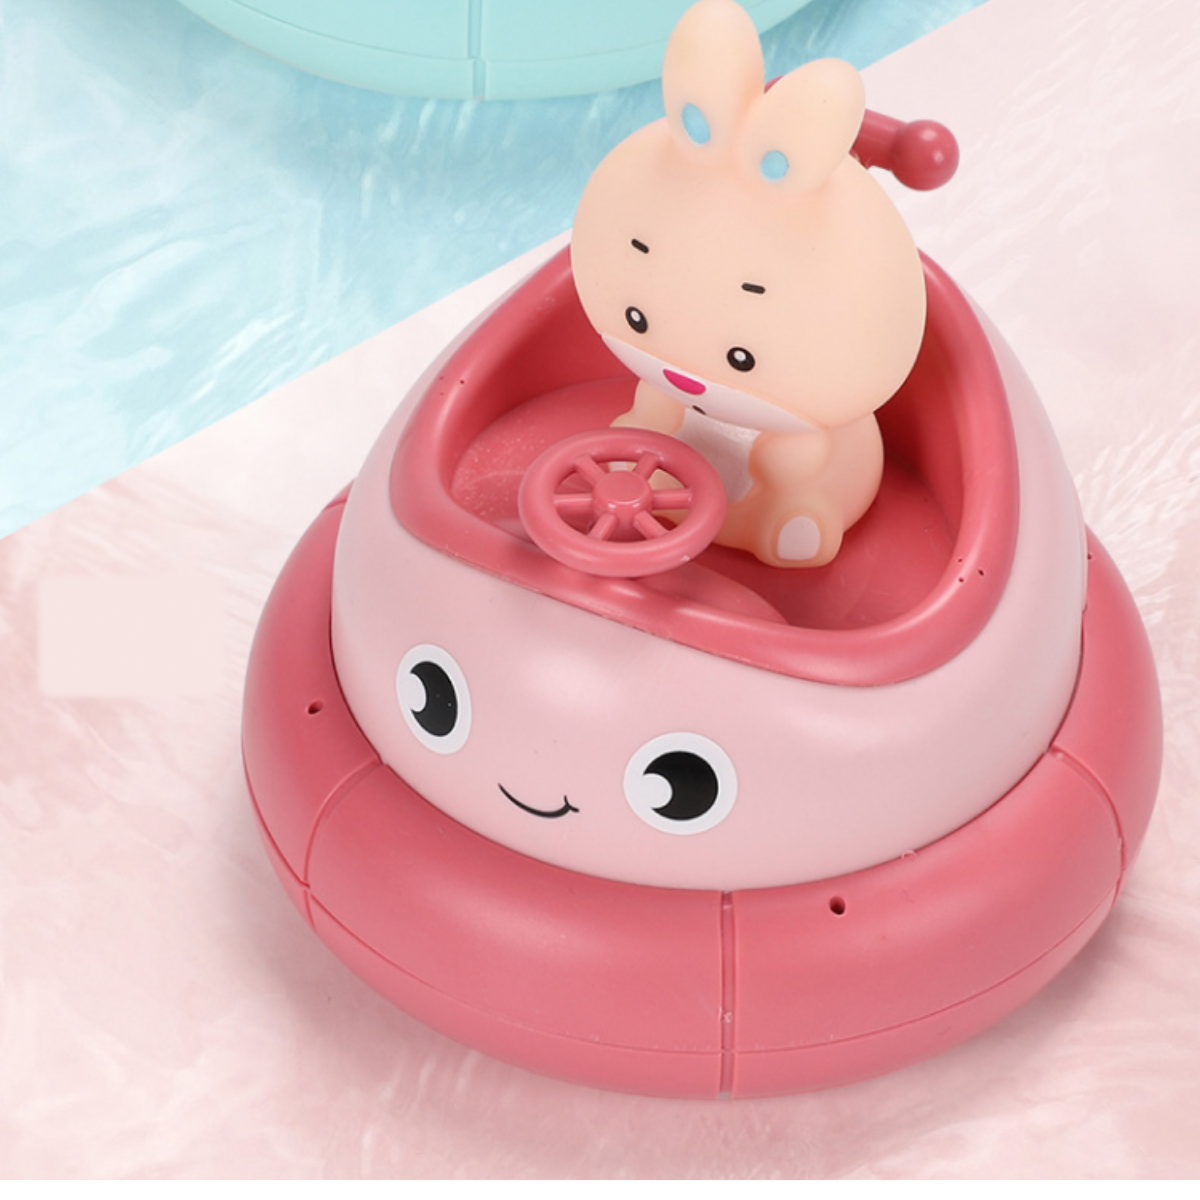 『人気お風呂おもちゃ』バンパーカーの噴水おもちゃ｜ライオンとウサギが選択可能！楽しいお風呂時間へ